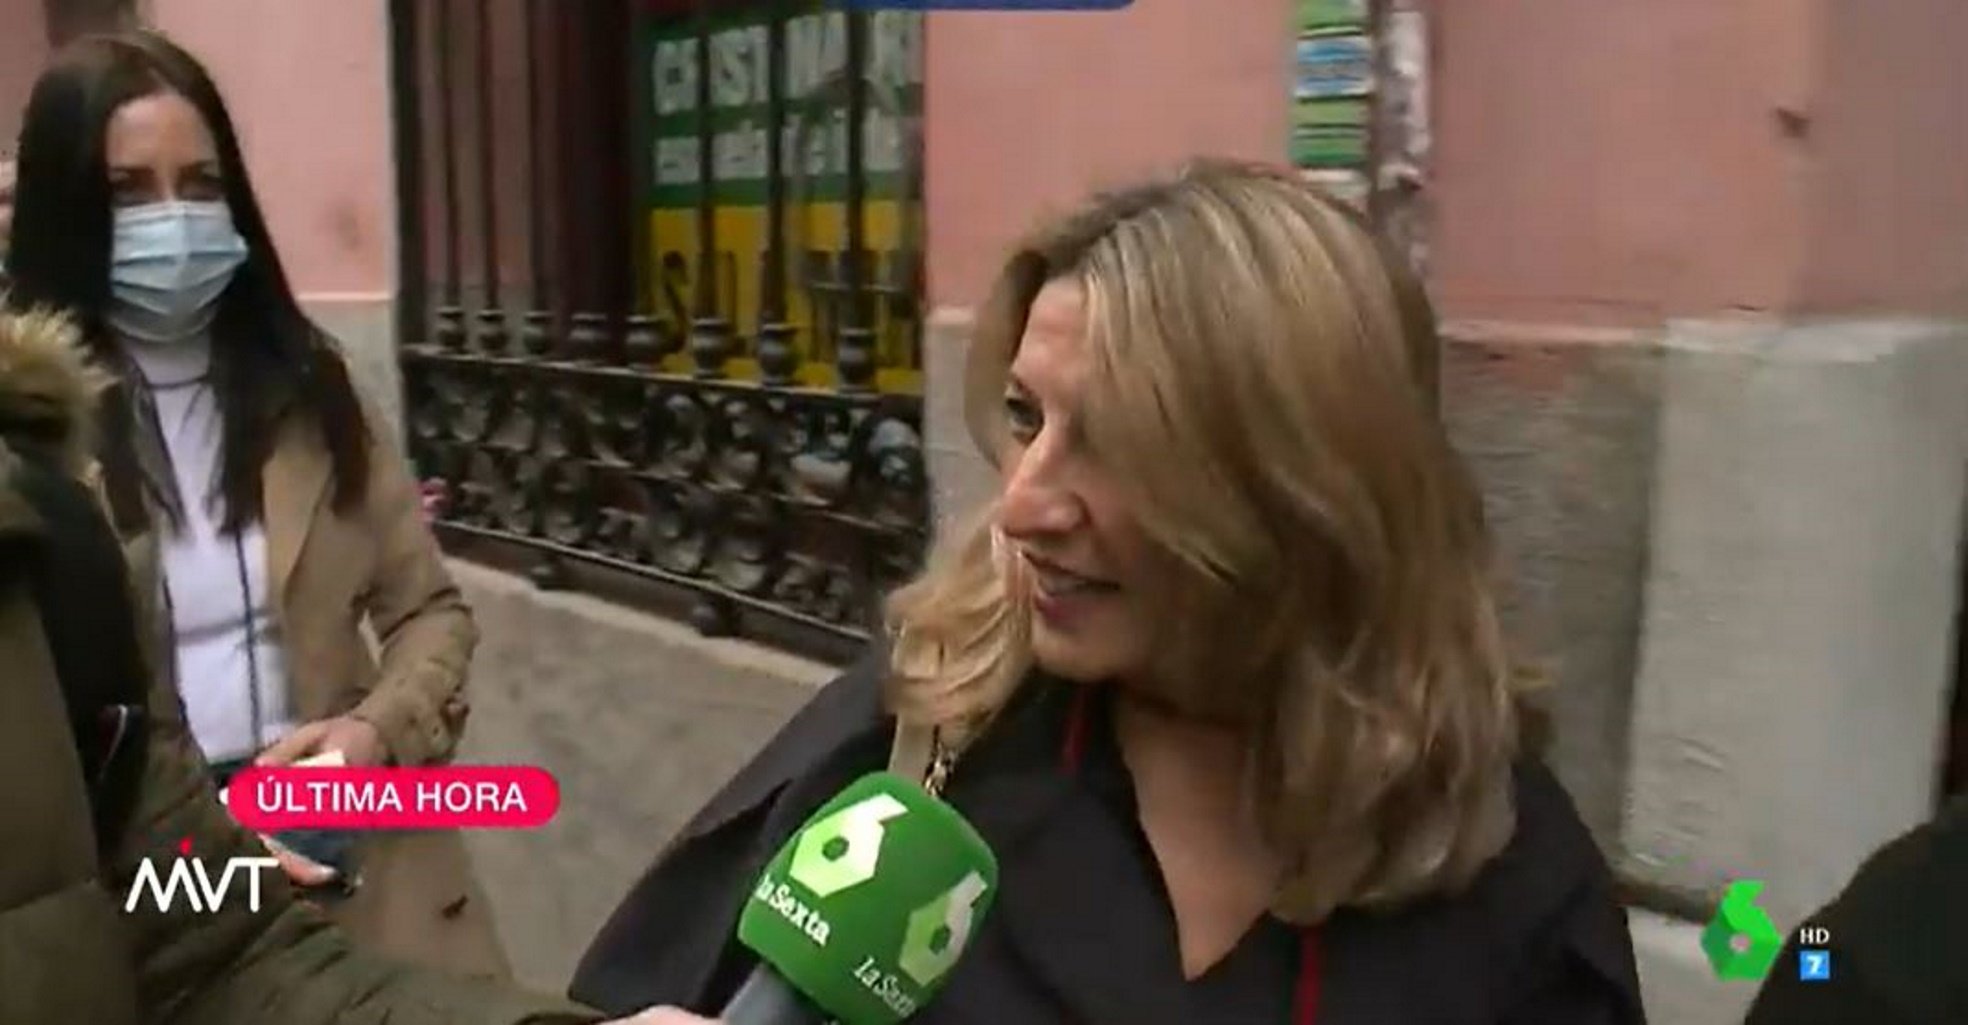 Topada entre Pablo Iglesias i Yolanda Díaz, que replica: "Jo em dedico a treballar"